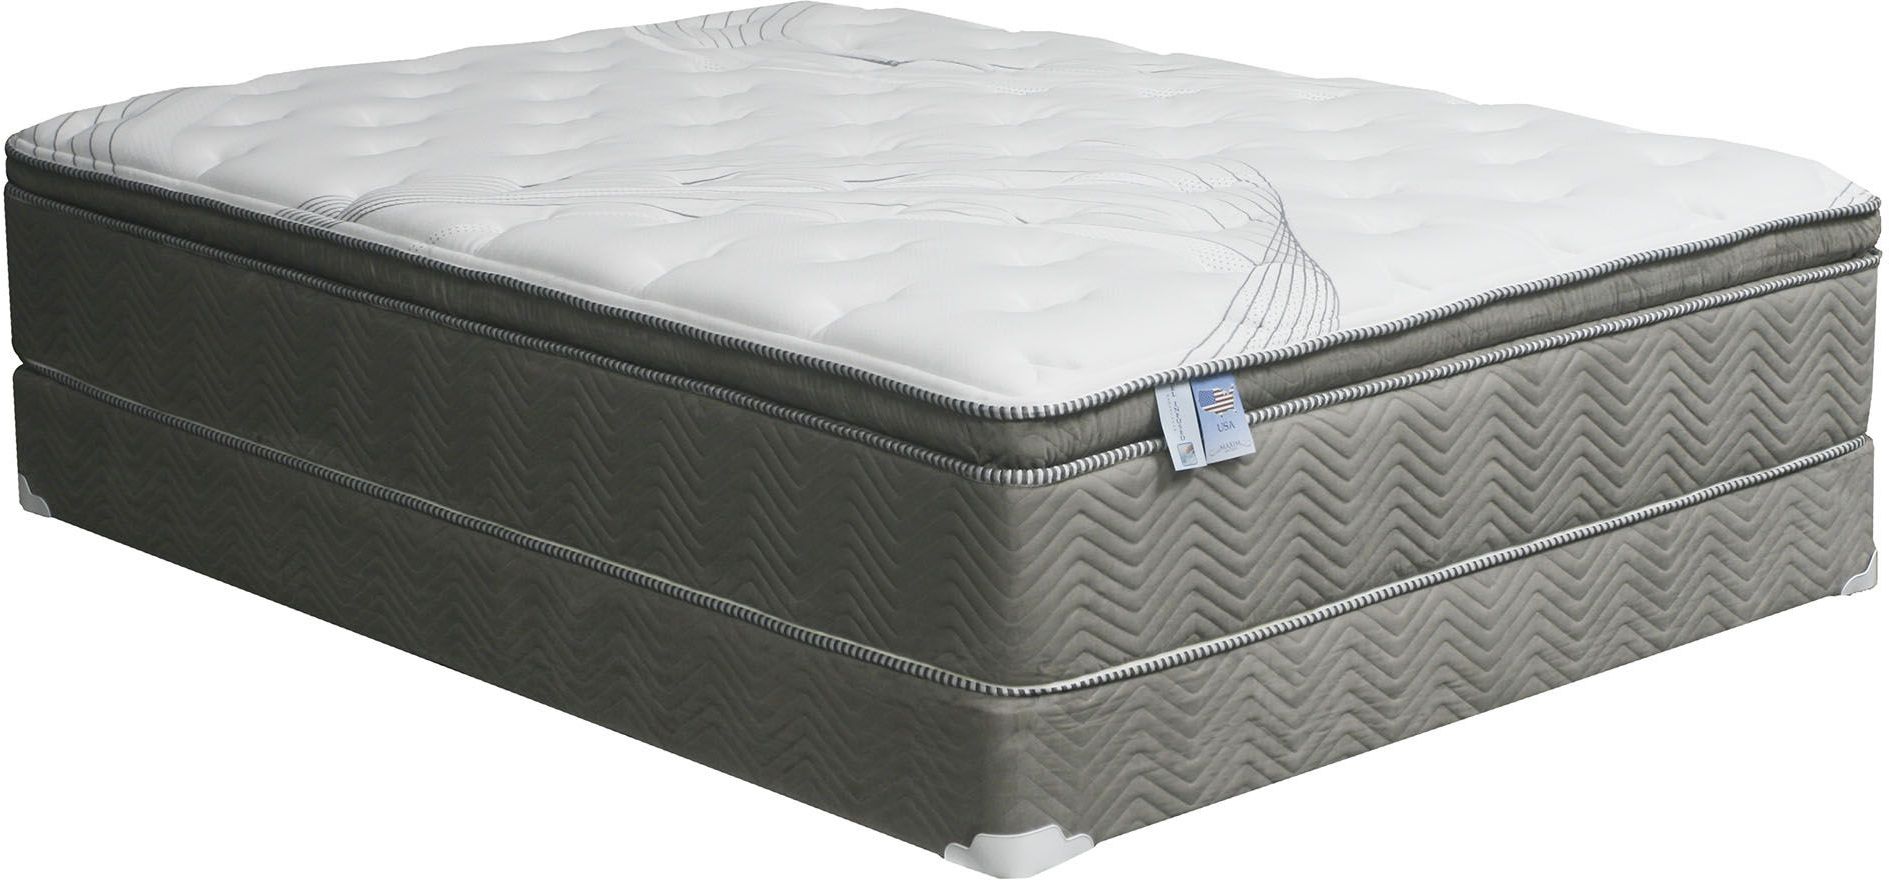 canberra pillow top queen mattress